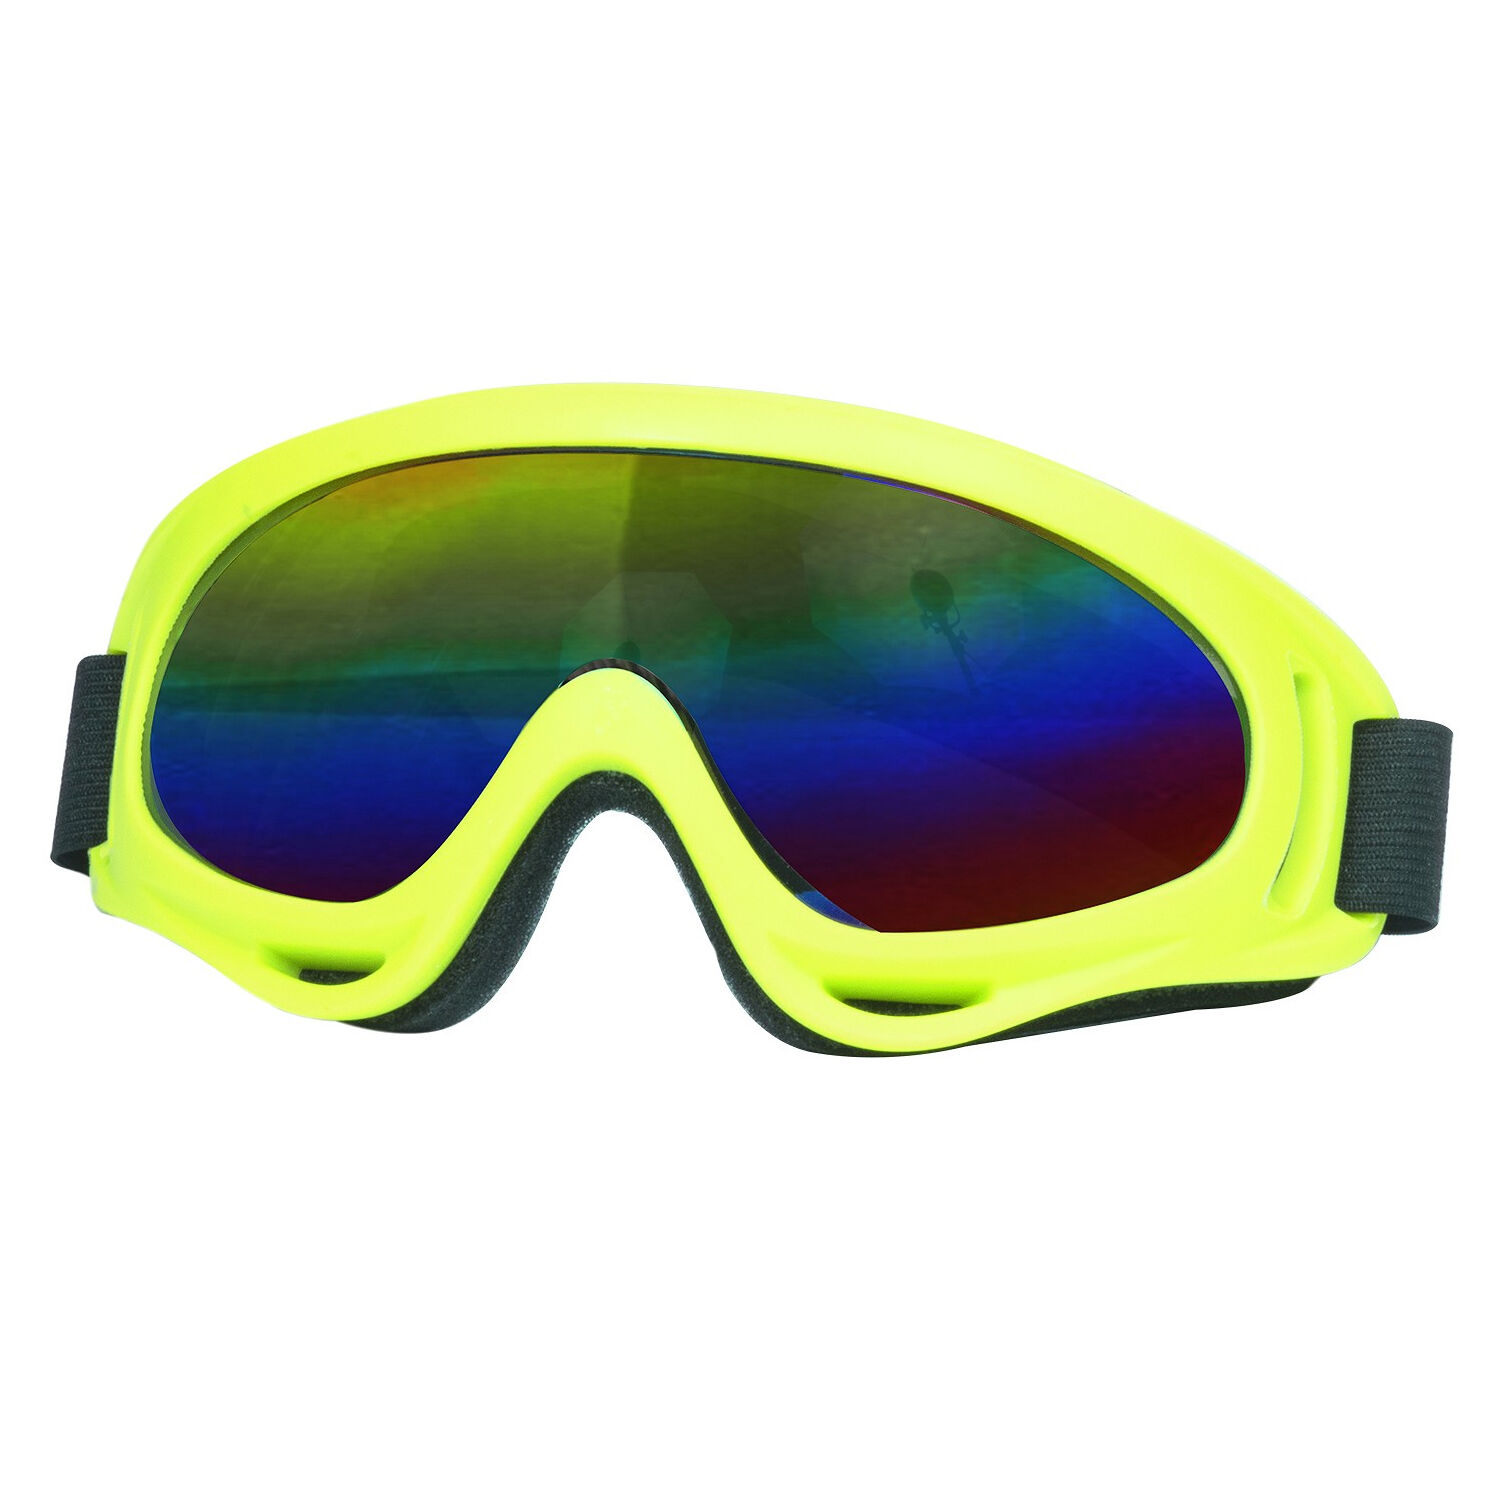 NEU Brille Skifahrer mit verspiegelten Glsern, neon-gelb